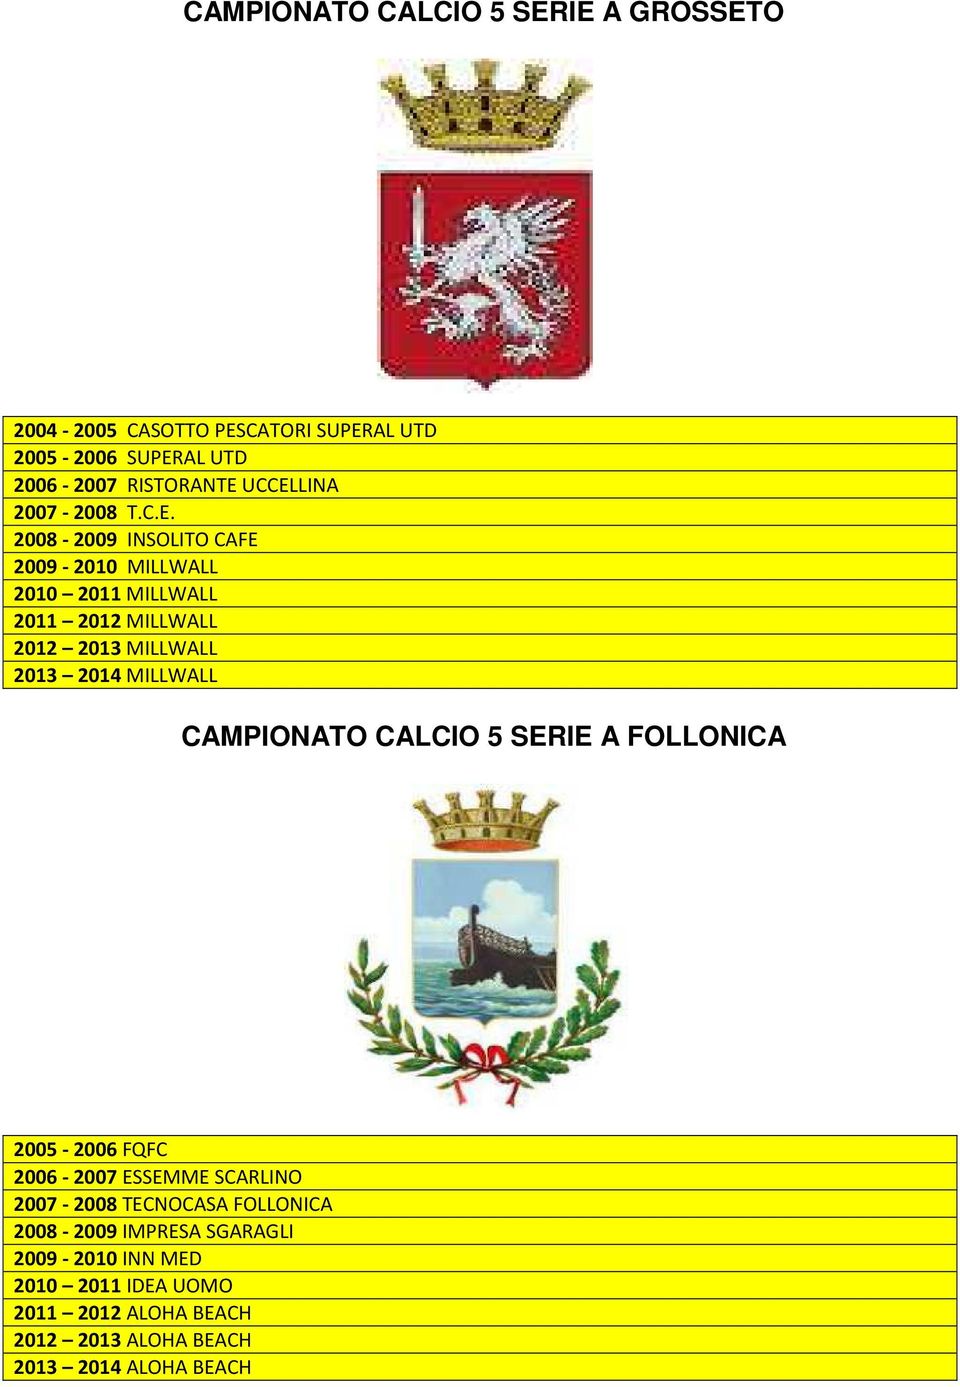 2013 2014 MILLWALL CAMPIONATO CALCIO 5 SERIE A FOLLONICA 2005-2006 FQFC 2006-2007 ESSEMME SCARLINO 2007-2008 TECNOCASA